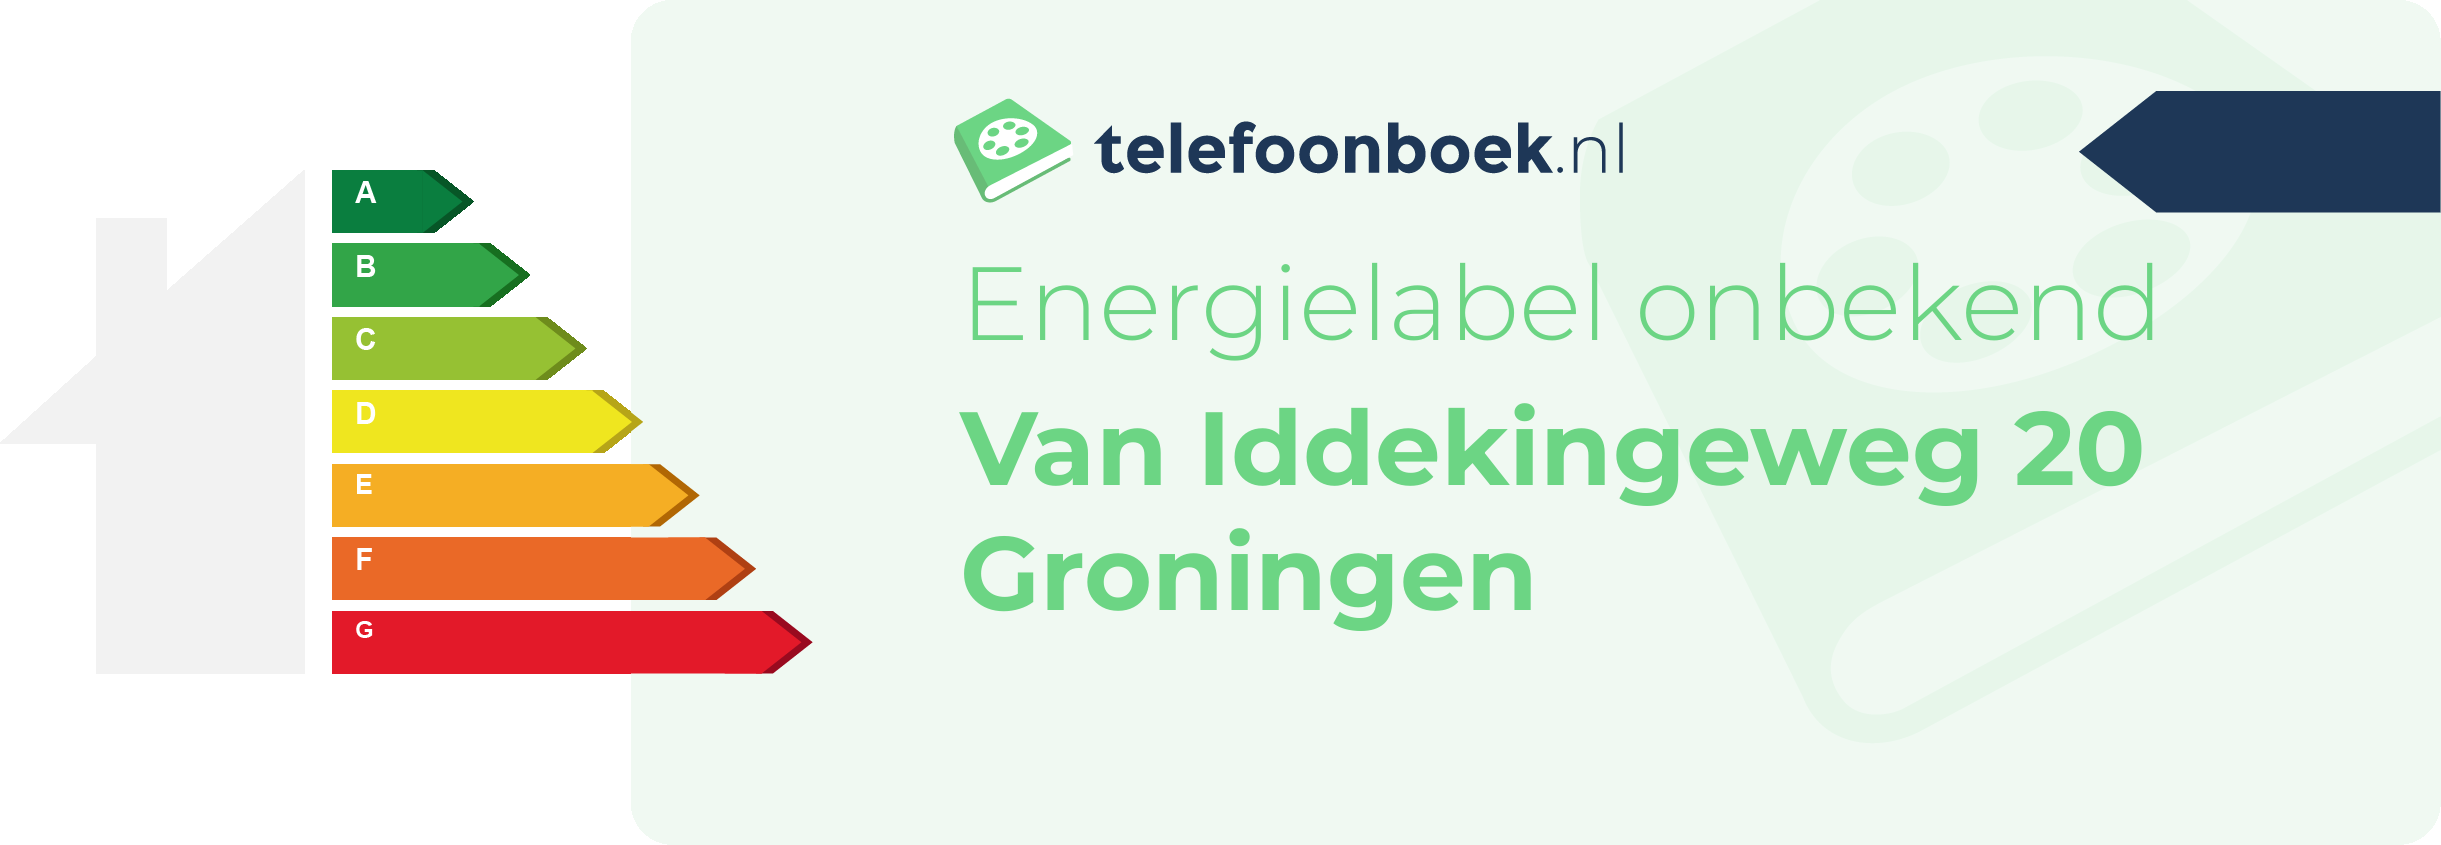 Energielabel Van Iddekingeweg 20 Groningen